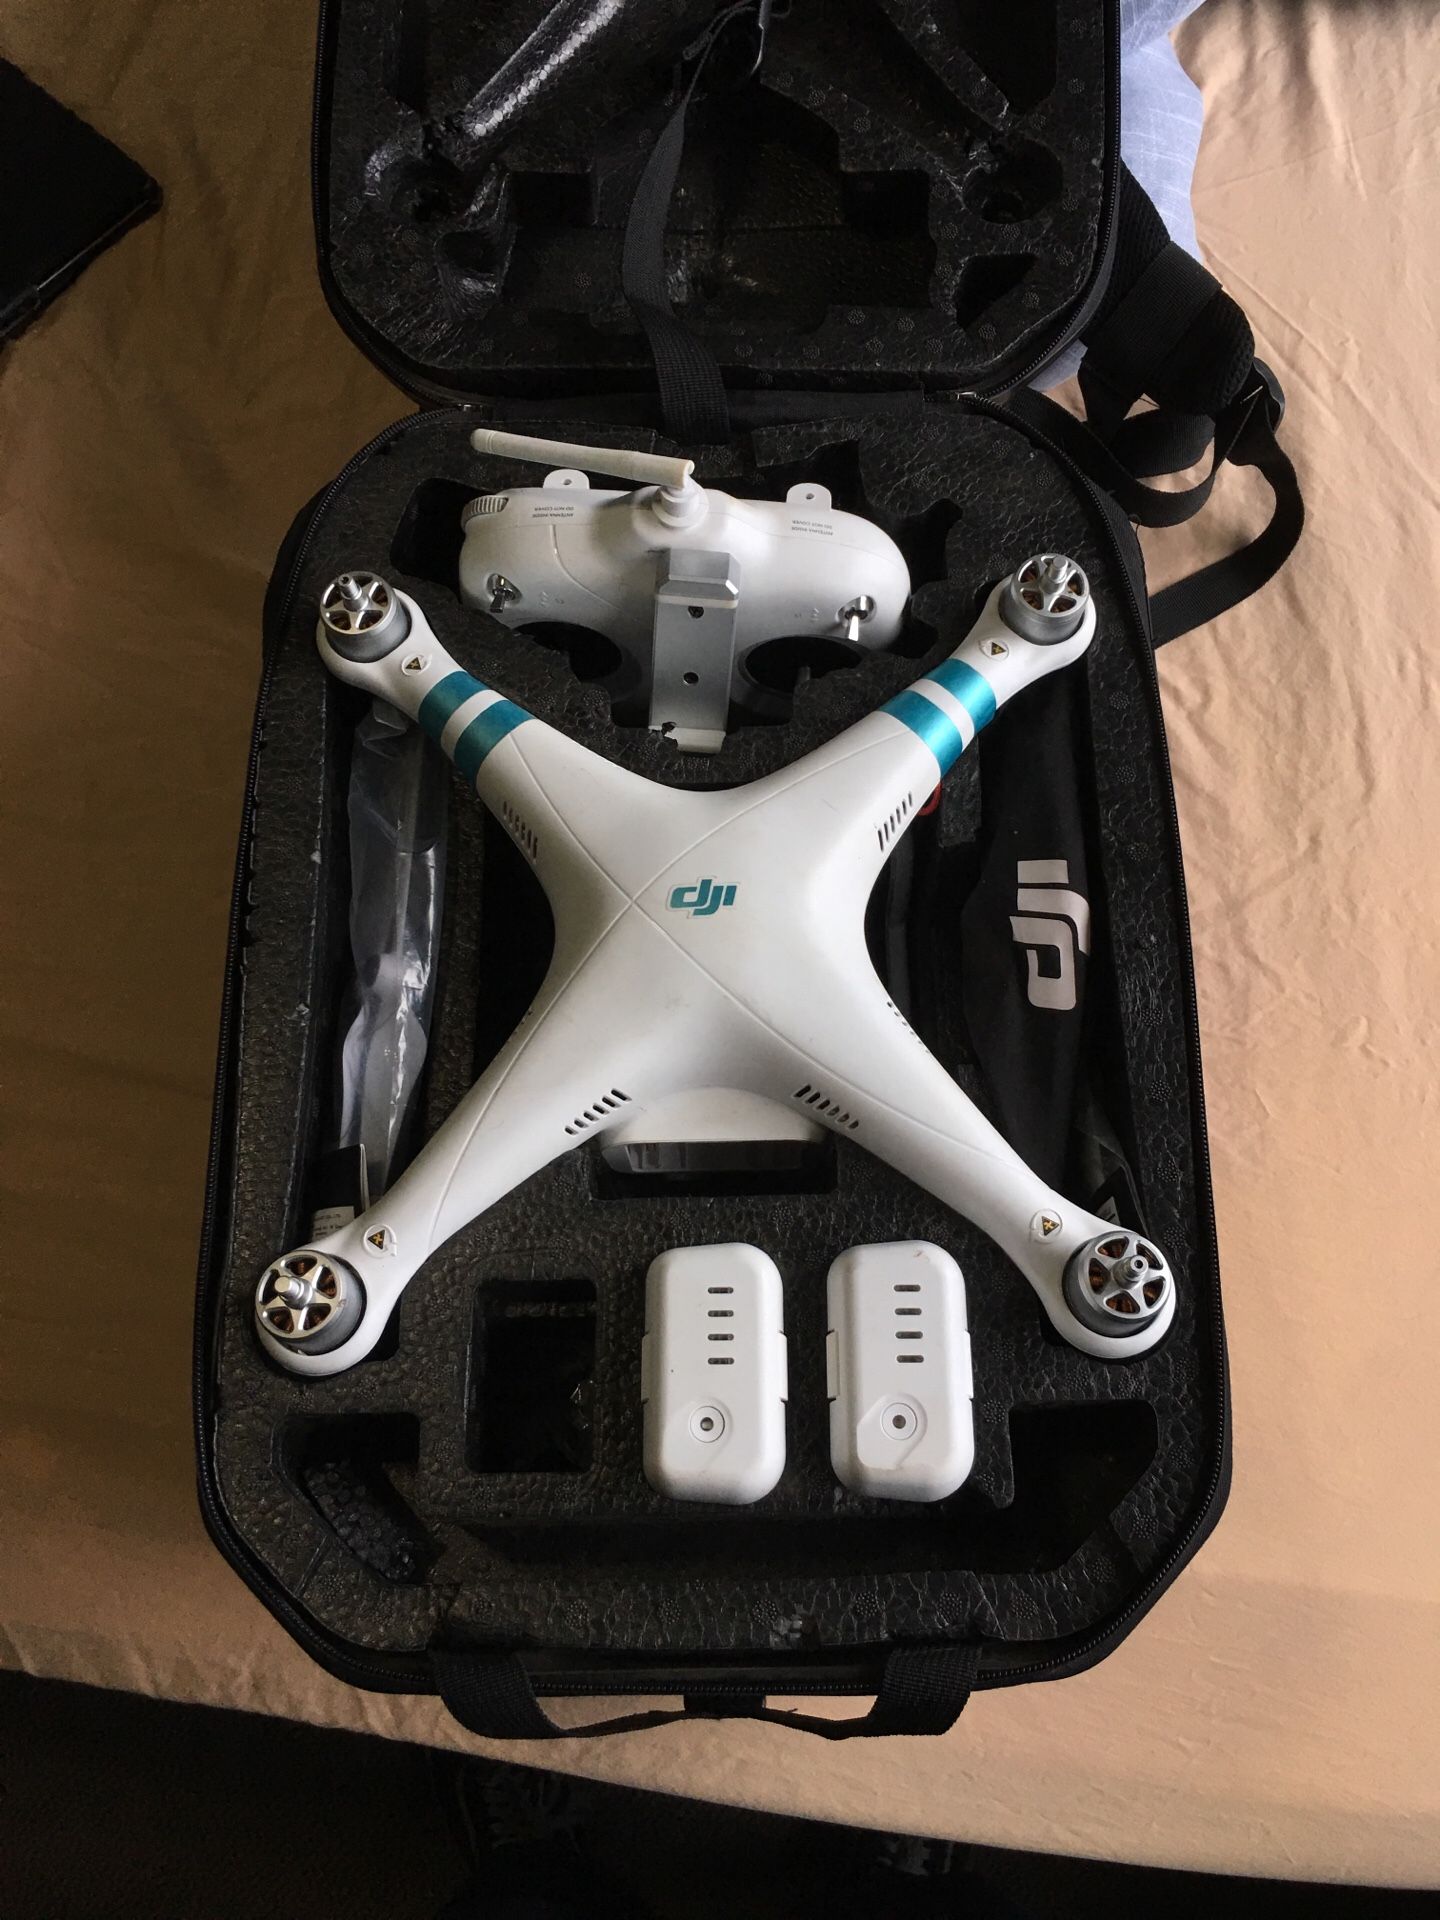 DJI phantom 3 standard drone